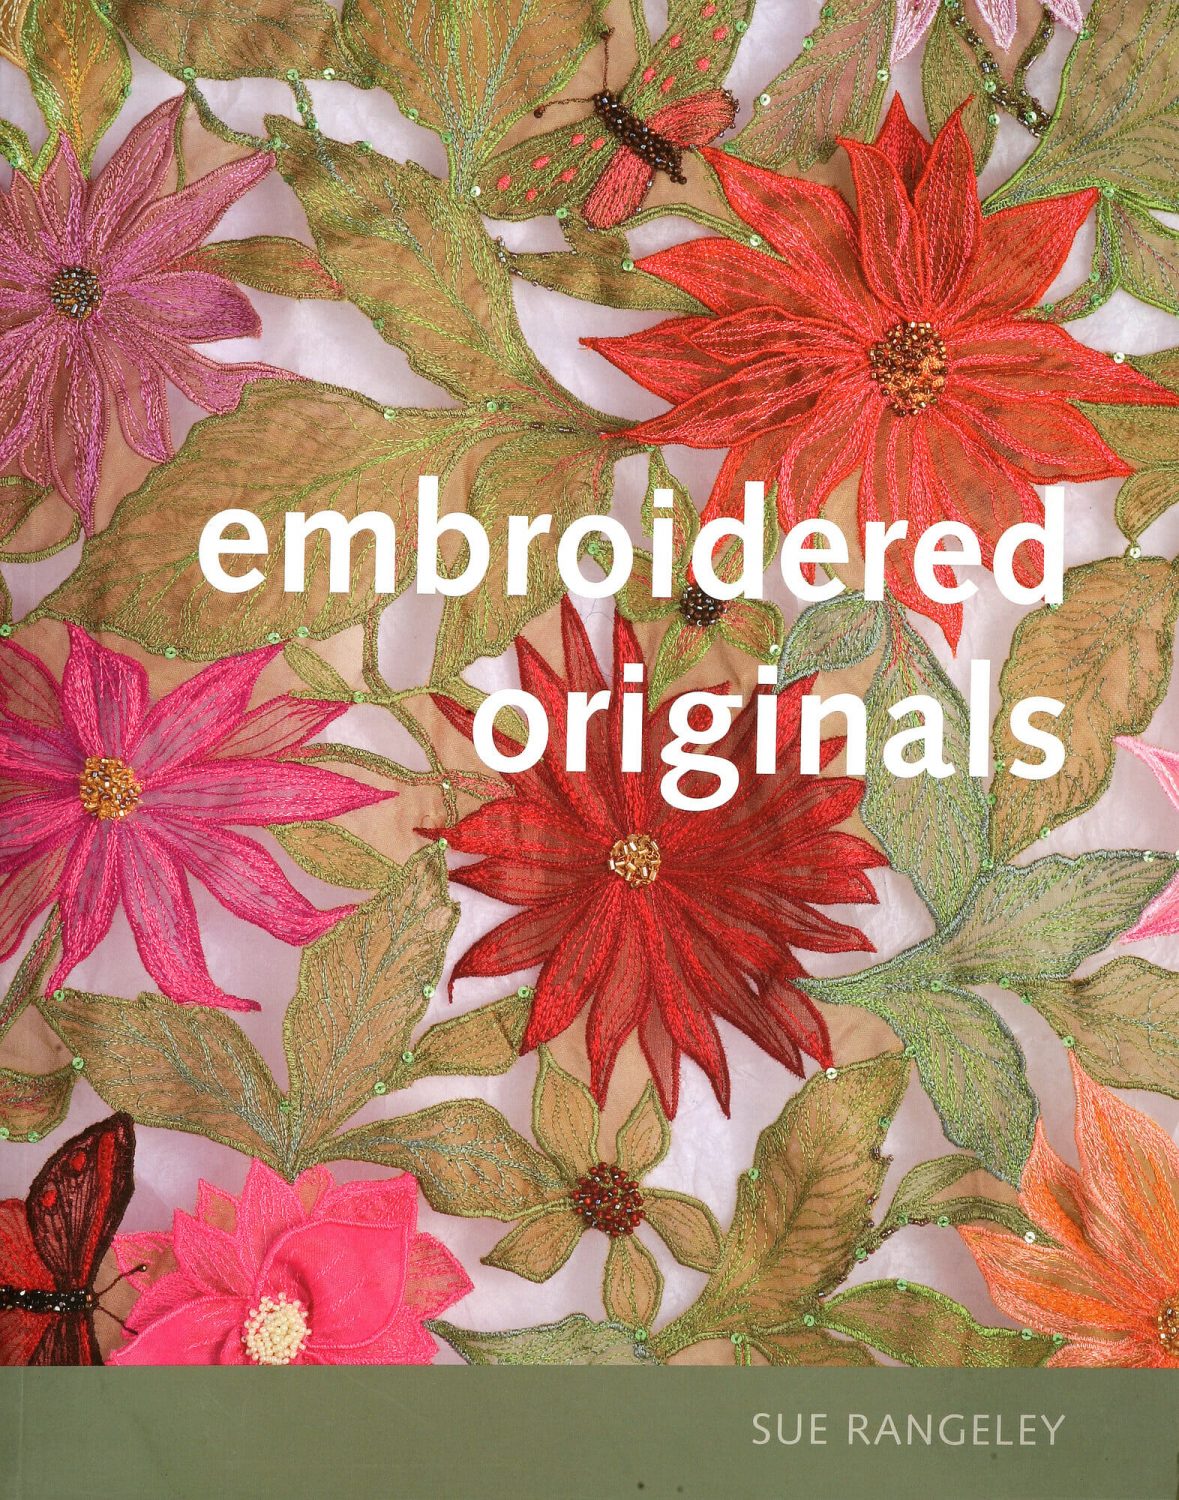 Sue Rangeley - Embroidered Originals